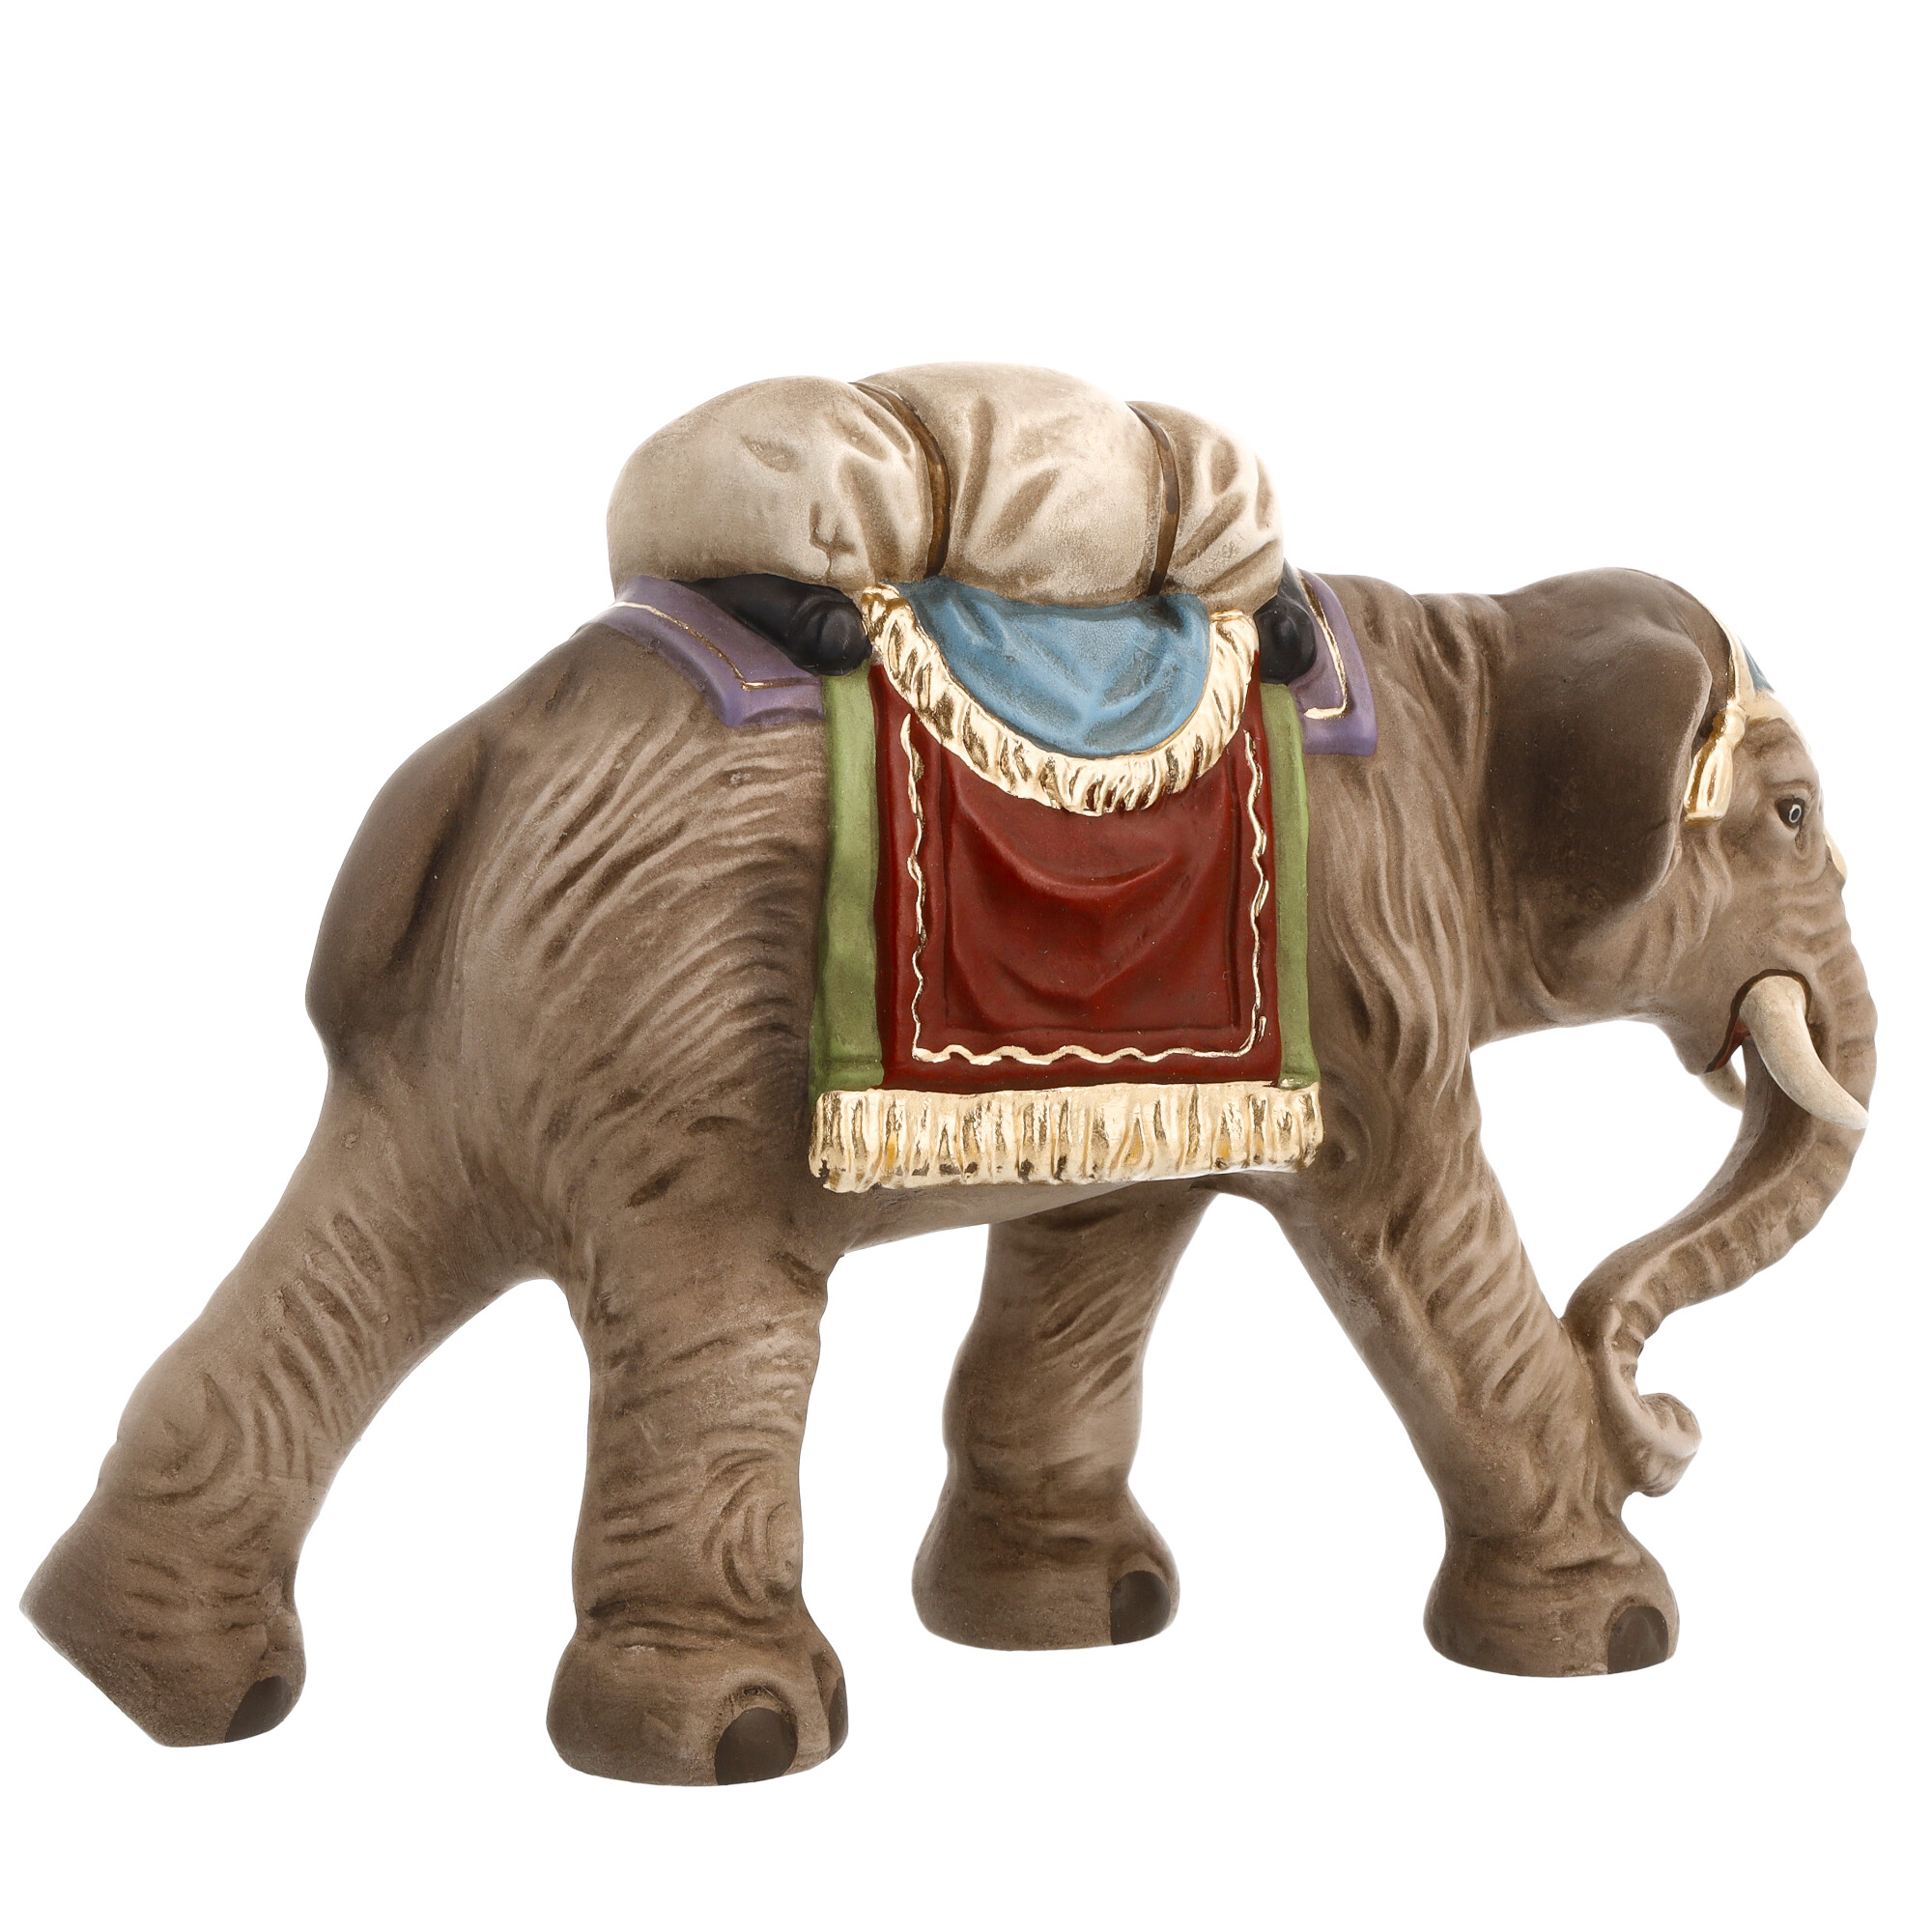 Elefant mit Gepäck, zu 10cm Krippenfiguren - Original MAROLIN® - Krippenfigur für Ihre Weihnachtskrippe - Made in Germany